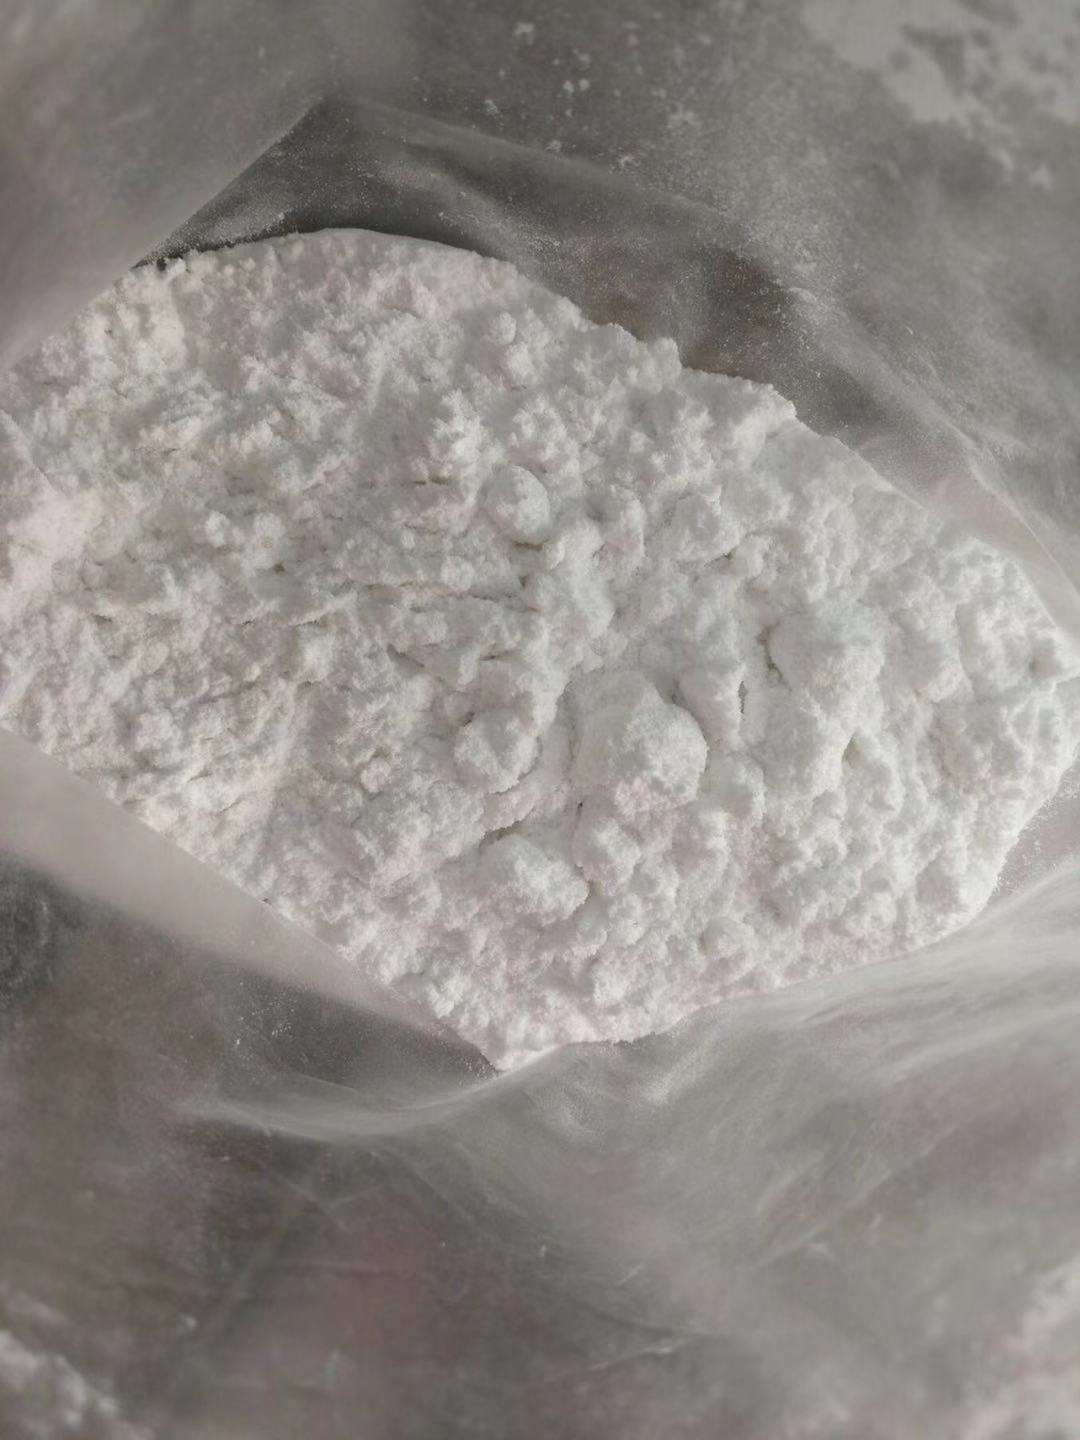 高纯度 99% Lidocaine hcl Powder CAS 73-78-9 Lidocaine hydrochloride 价格低廉